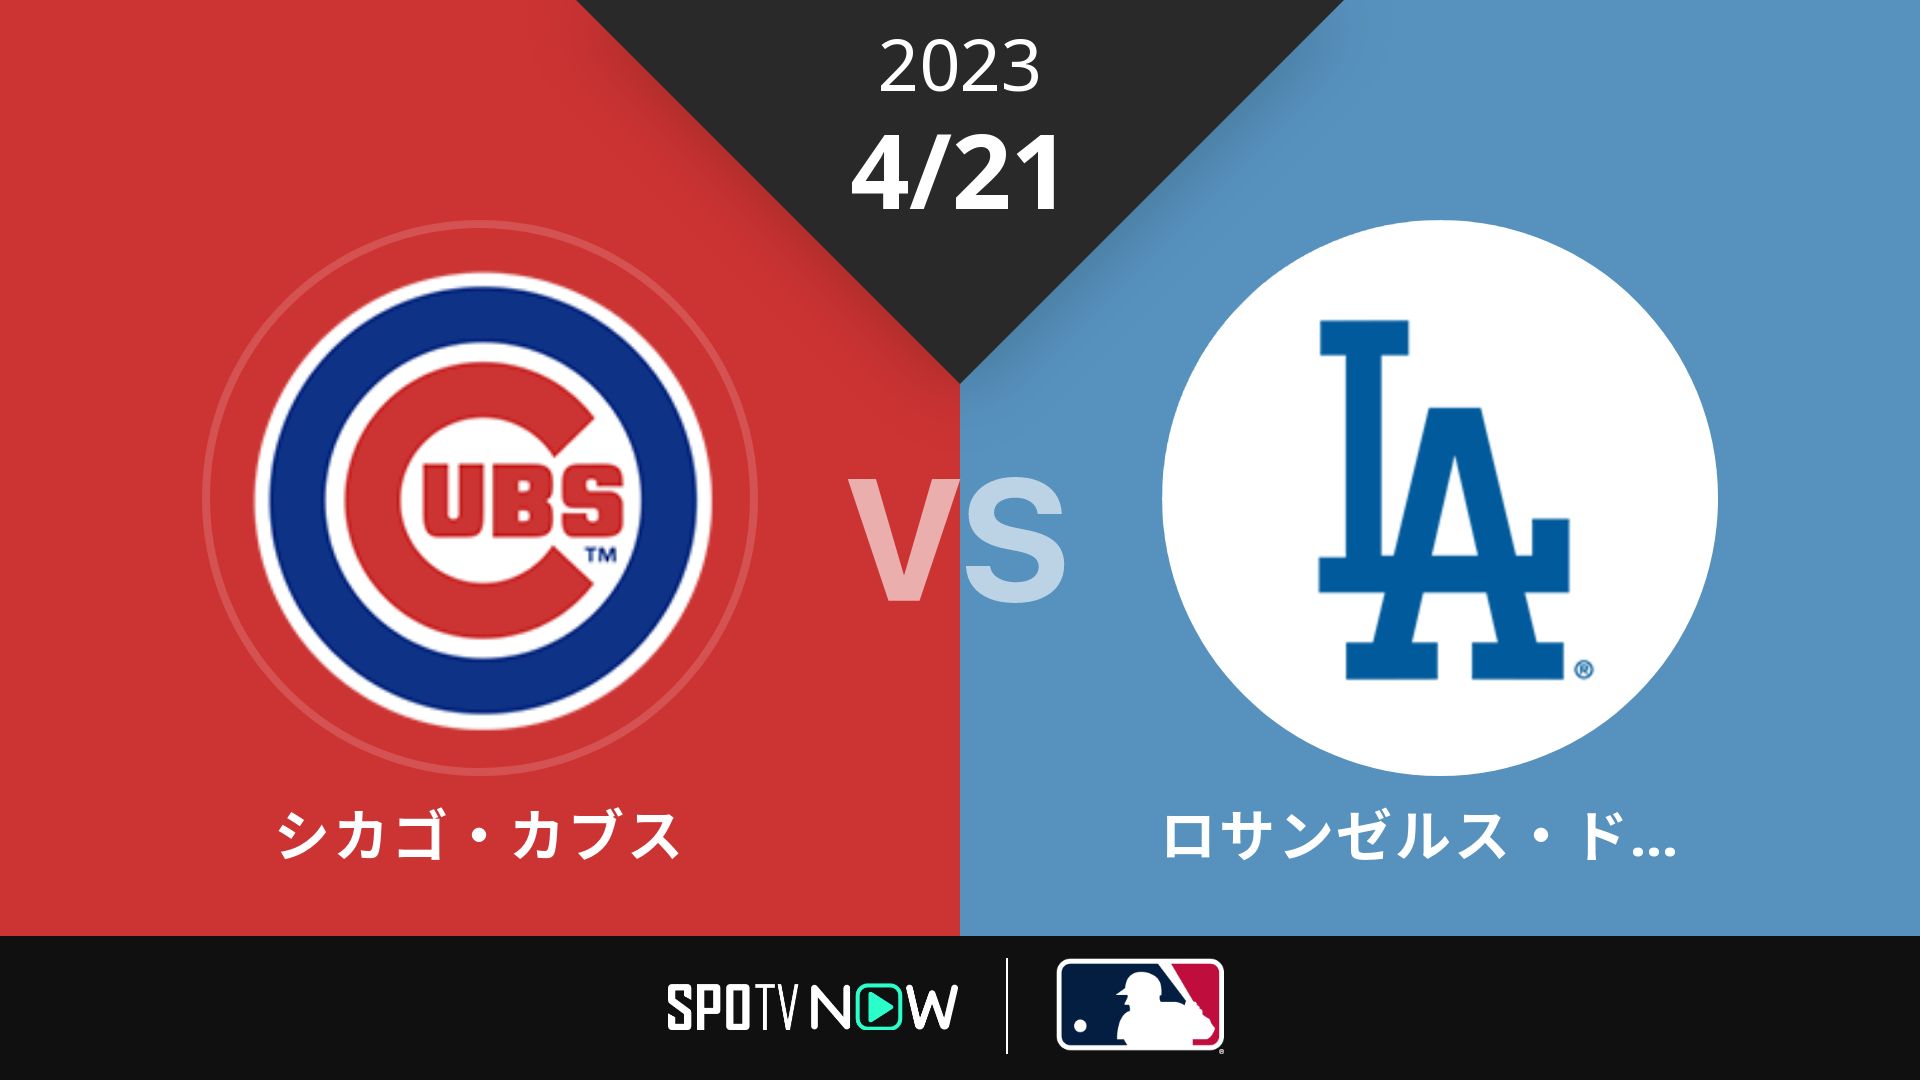 2023/4/21 カブス vs ドジャース [MLB]